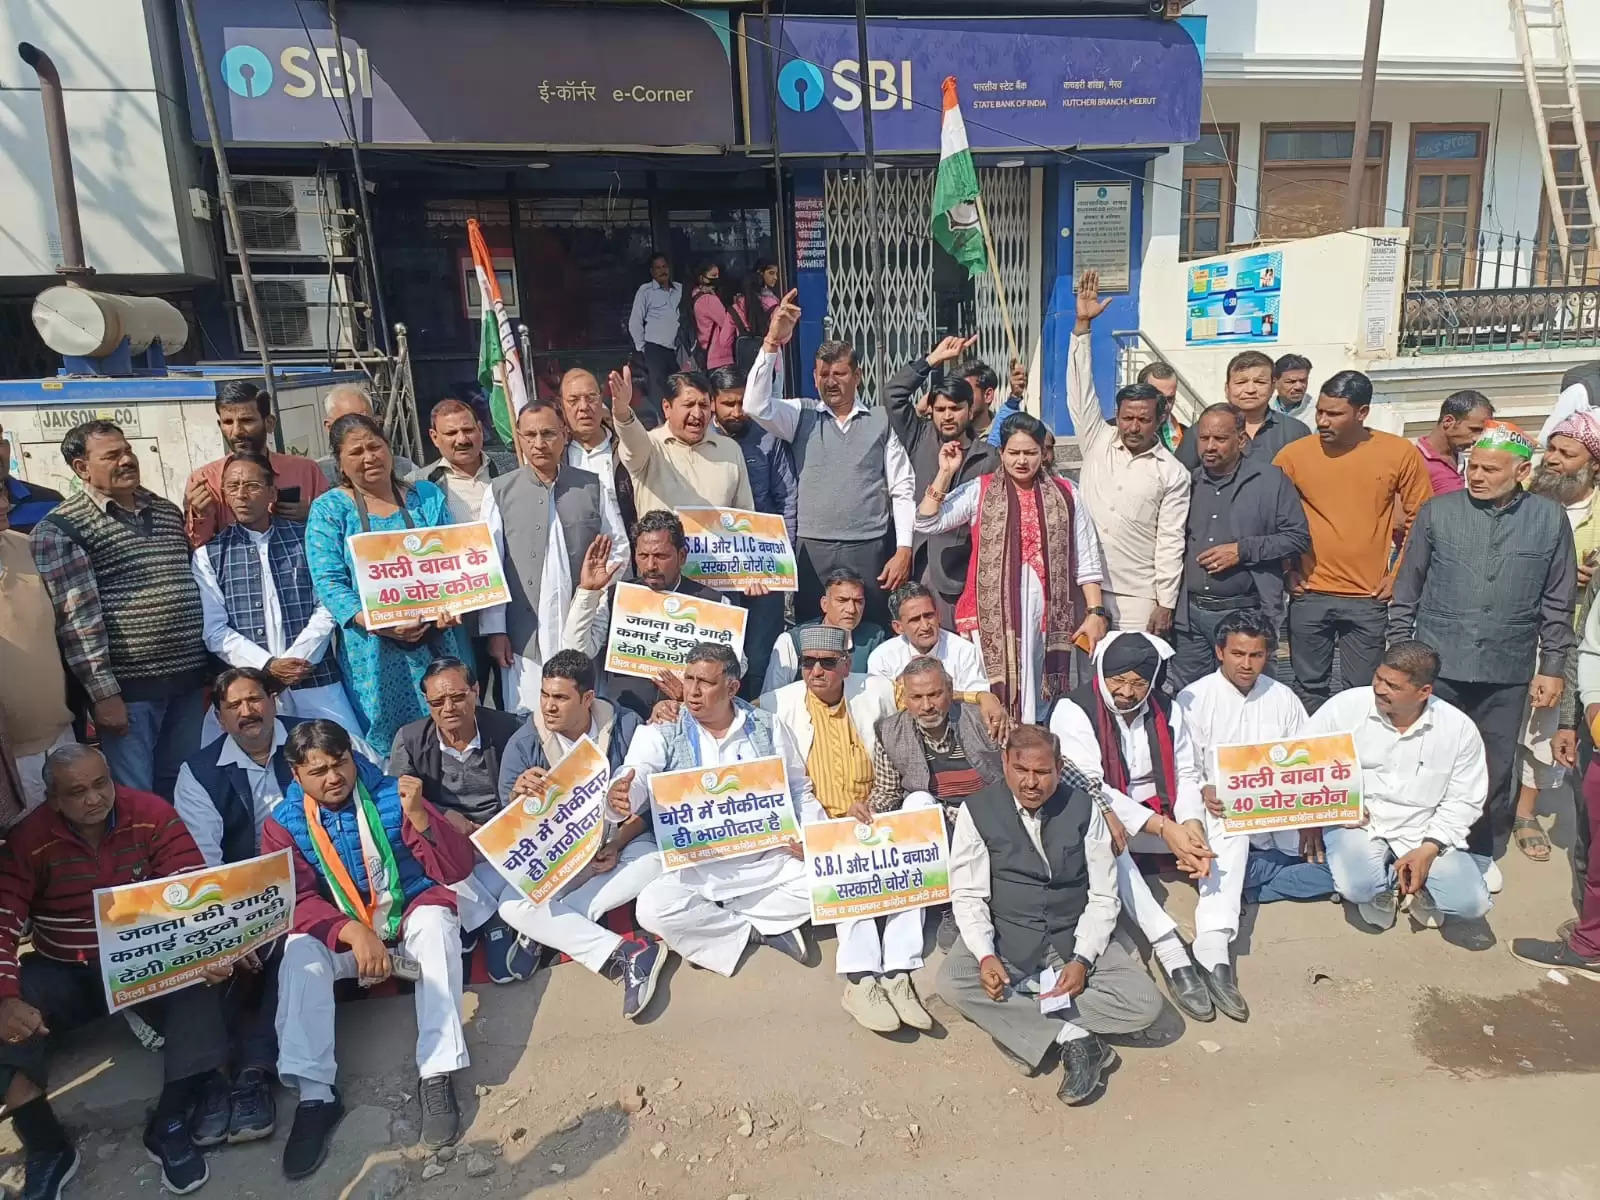  मेरठ में एसबीआई के बाहर कांग्रेस कार्यकर्ताओं का धरना